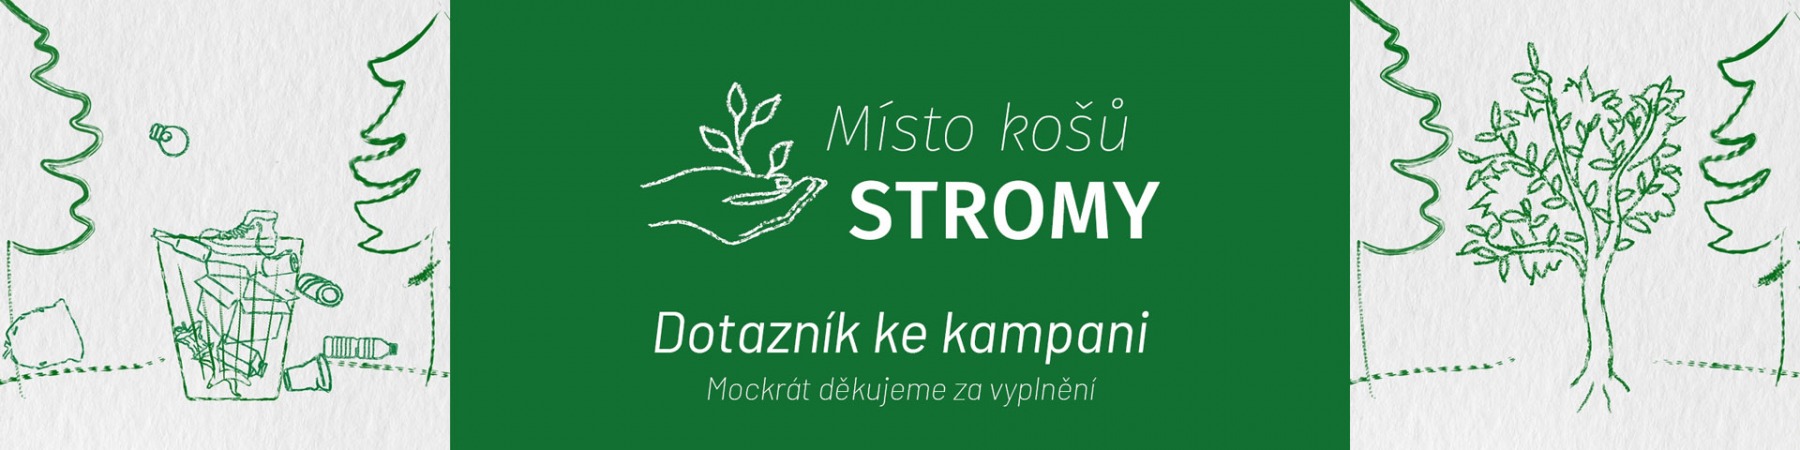 misto-kosu-stromy_formular